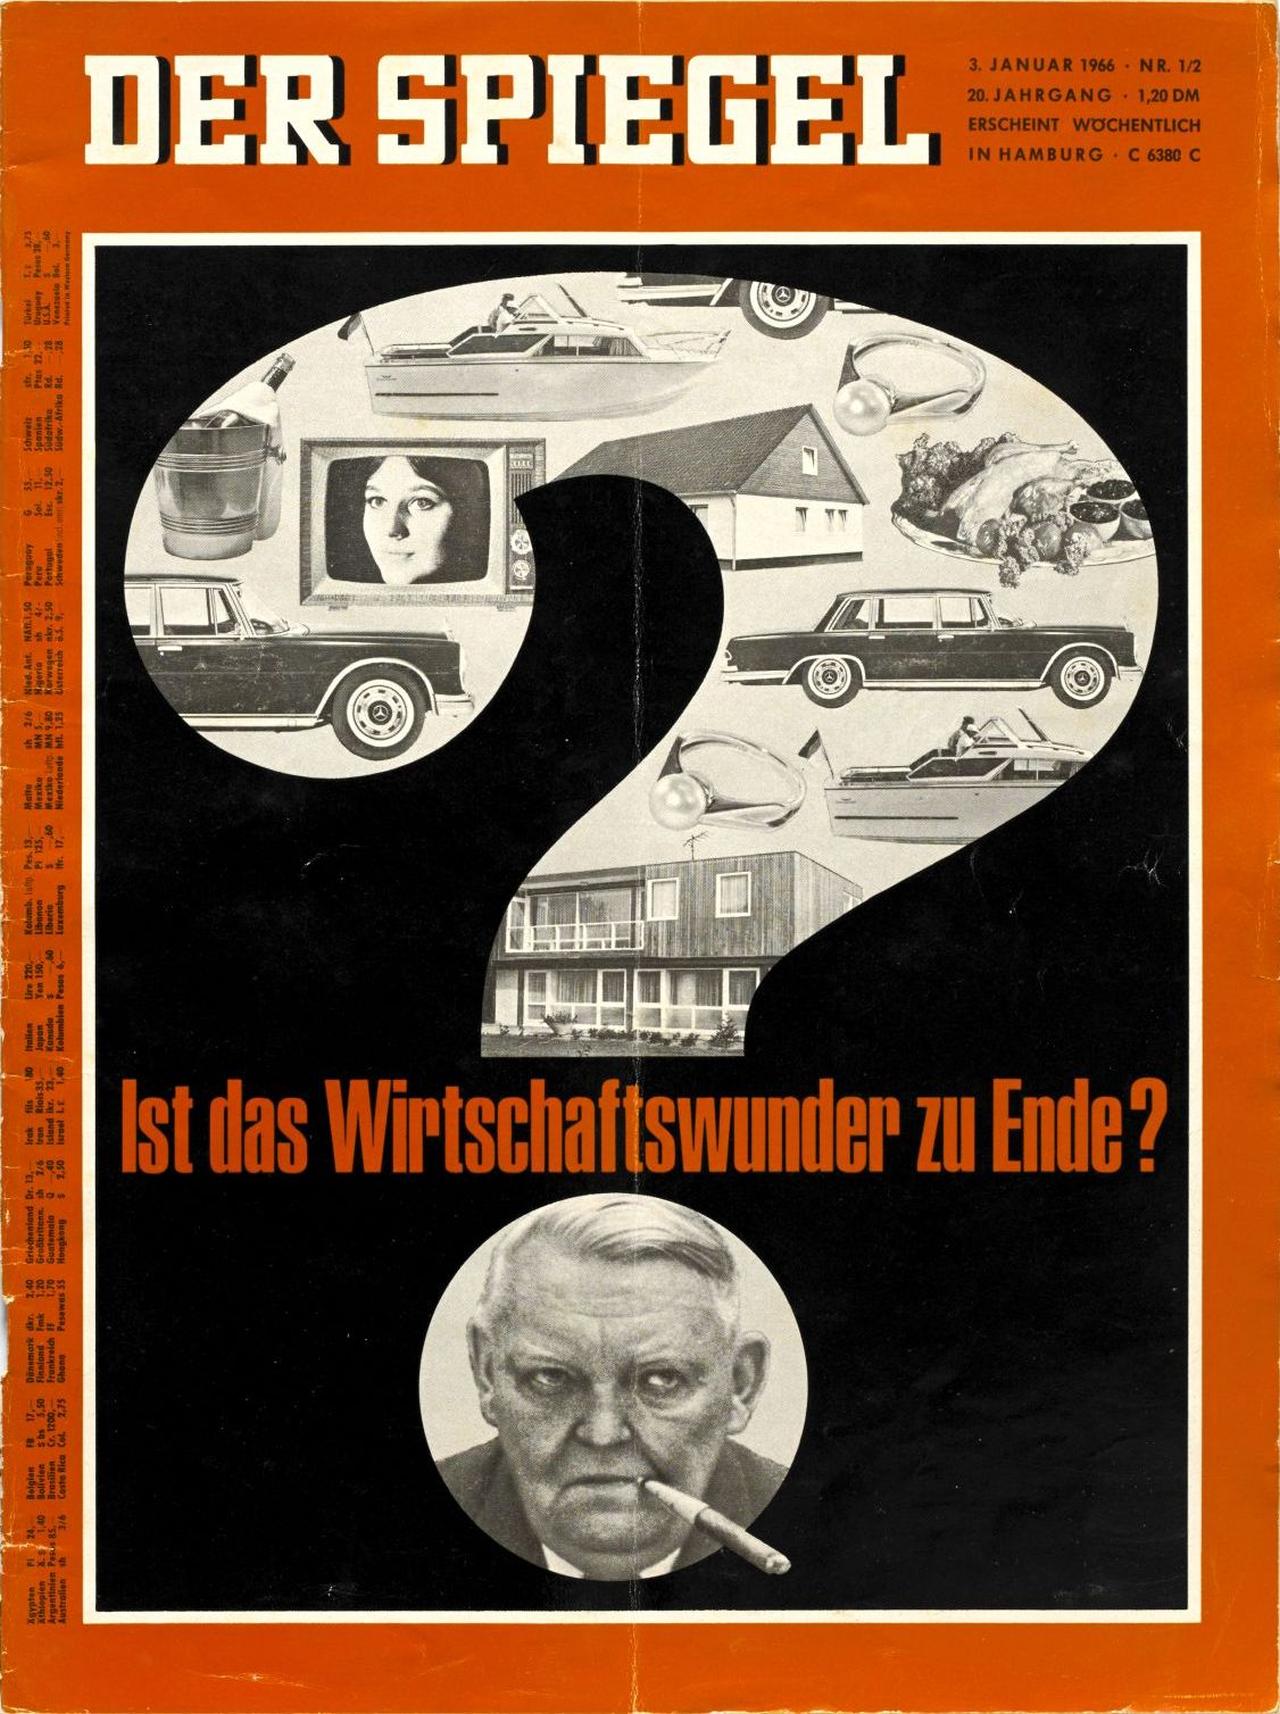 Der Spiegel-Titel vom 3. Januar 1966 zeigt ein großes Fragezeichen. Im oberen Teil des Fragezeichens sind verschiedene Konsumgüter wie Fernseher und Autos zu sehen. Im Punkt des Fragezeichen ist Ludwig Erhards Gesicht zu sehen. Zwischen oberem Teil und Punkt steht: 